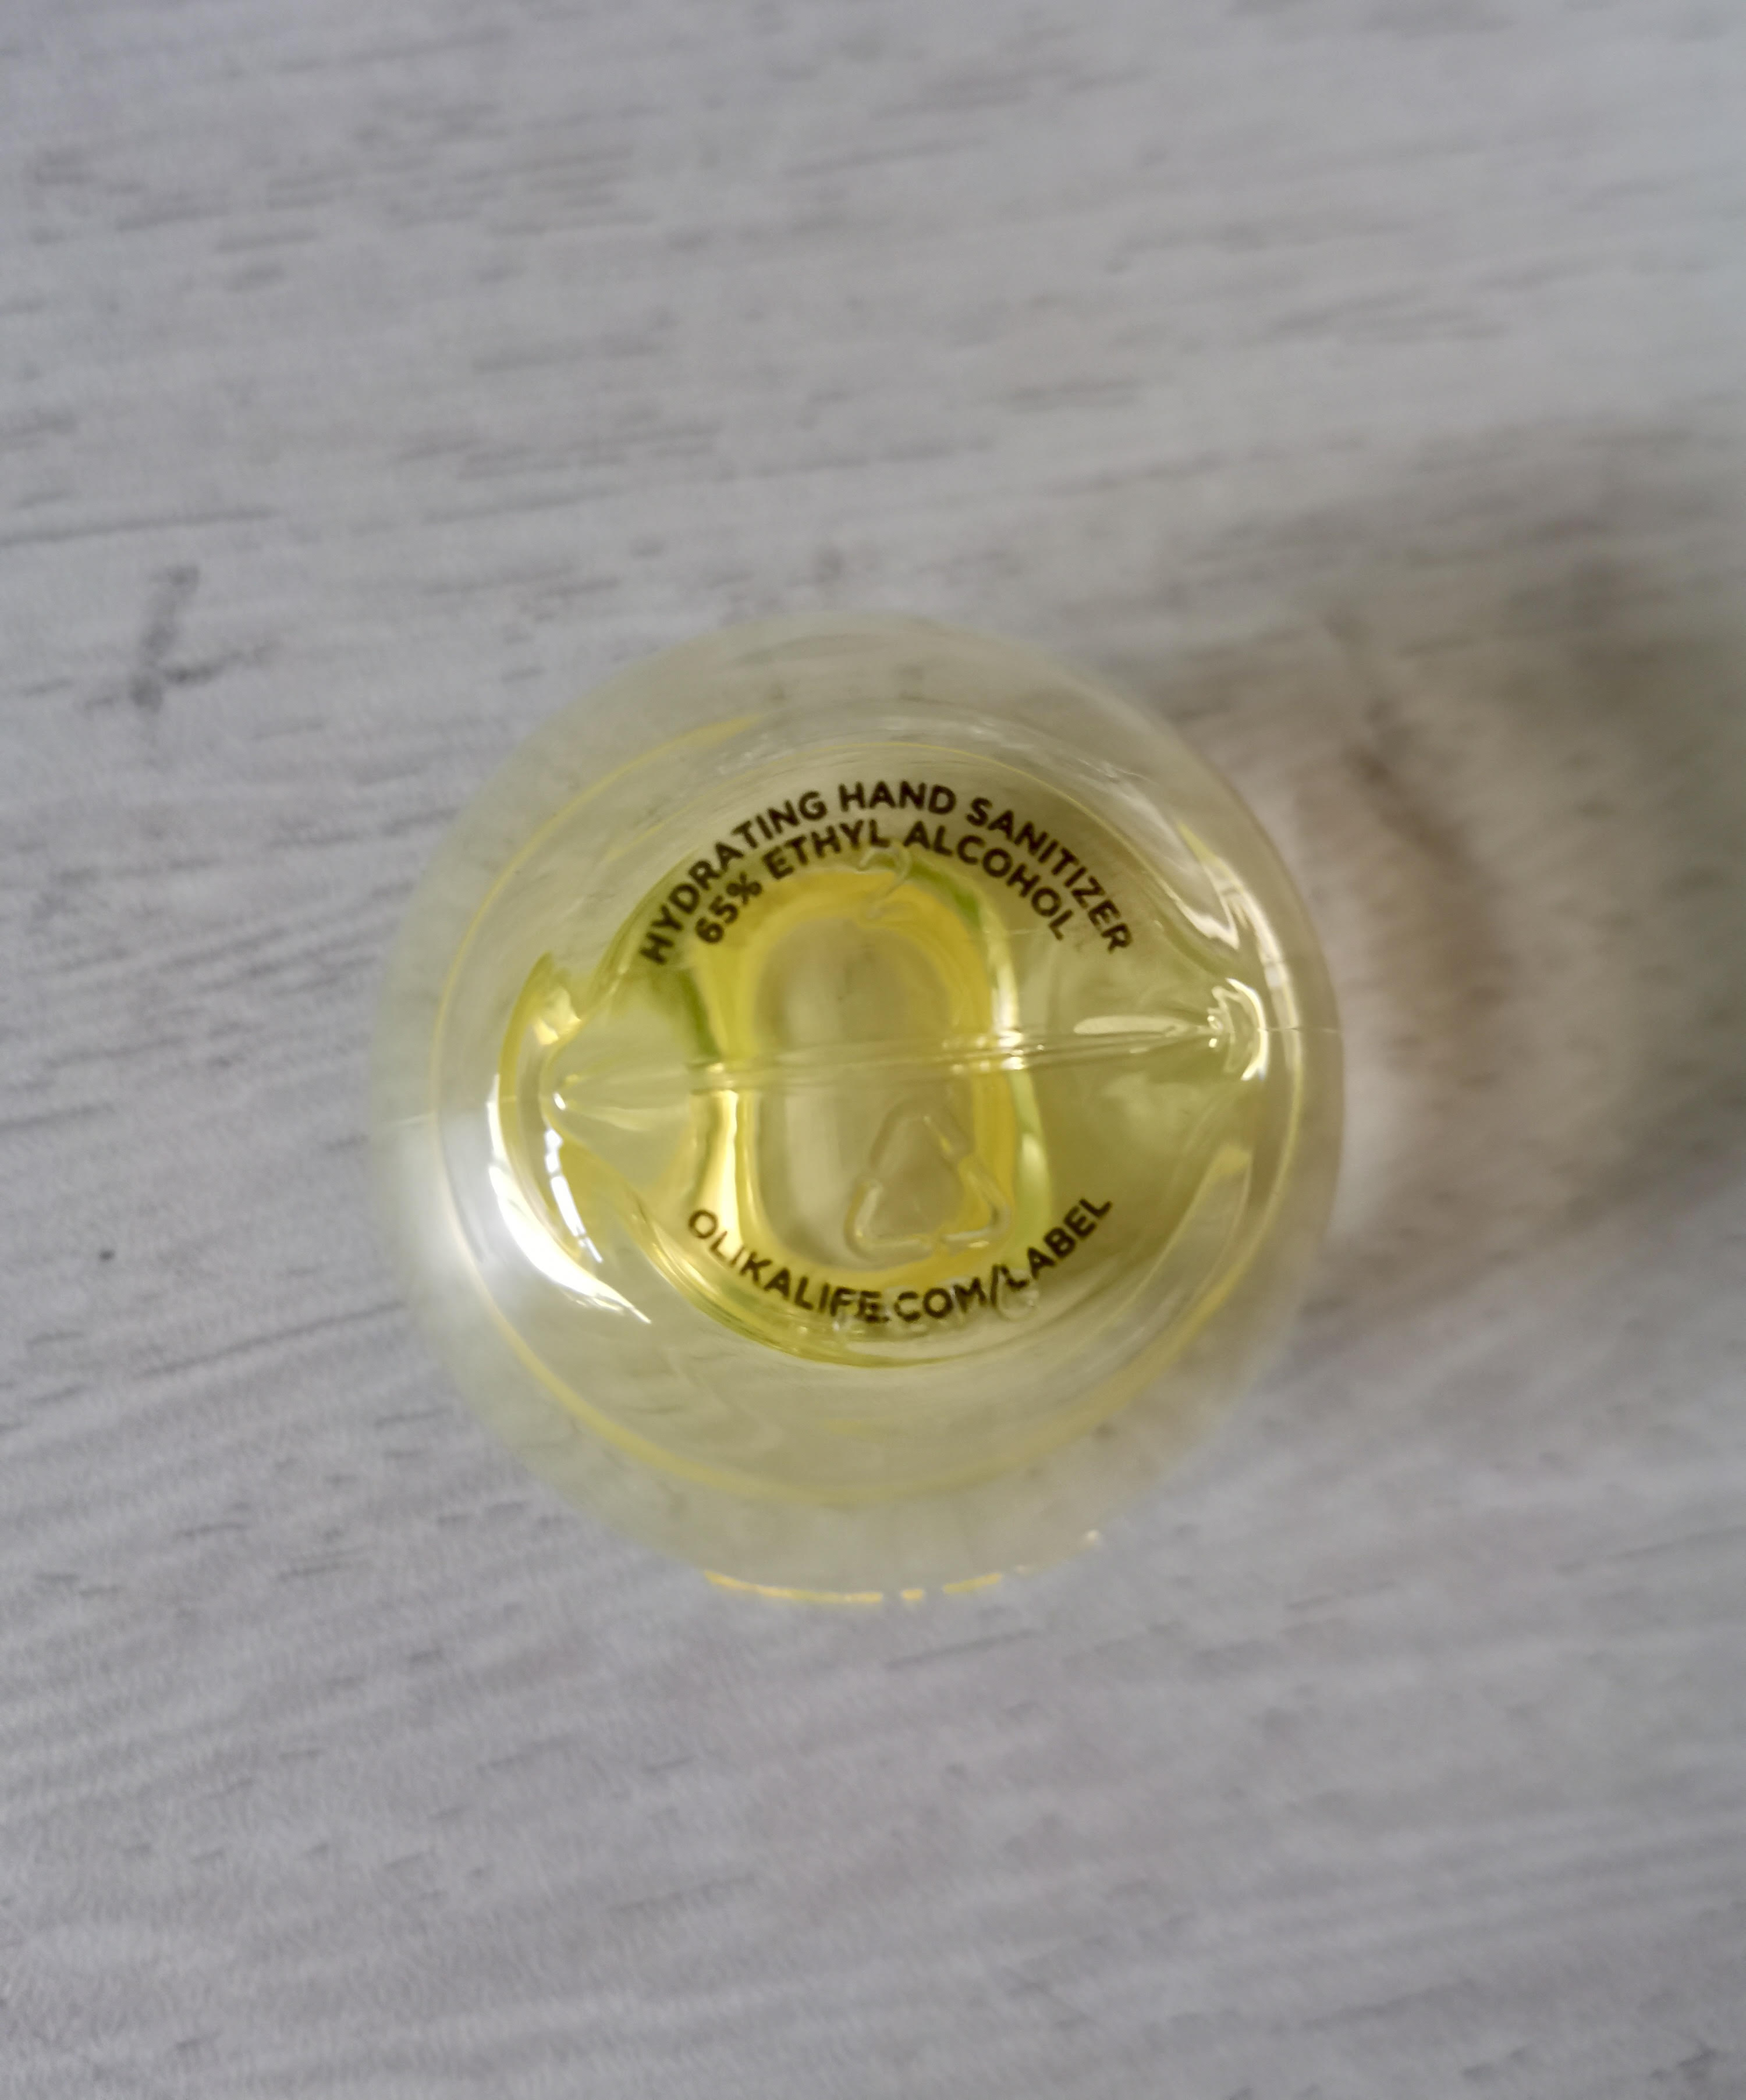 Bottle printed label on bottom